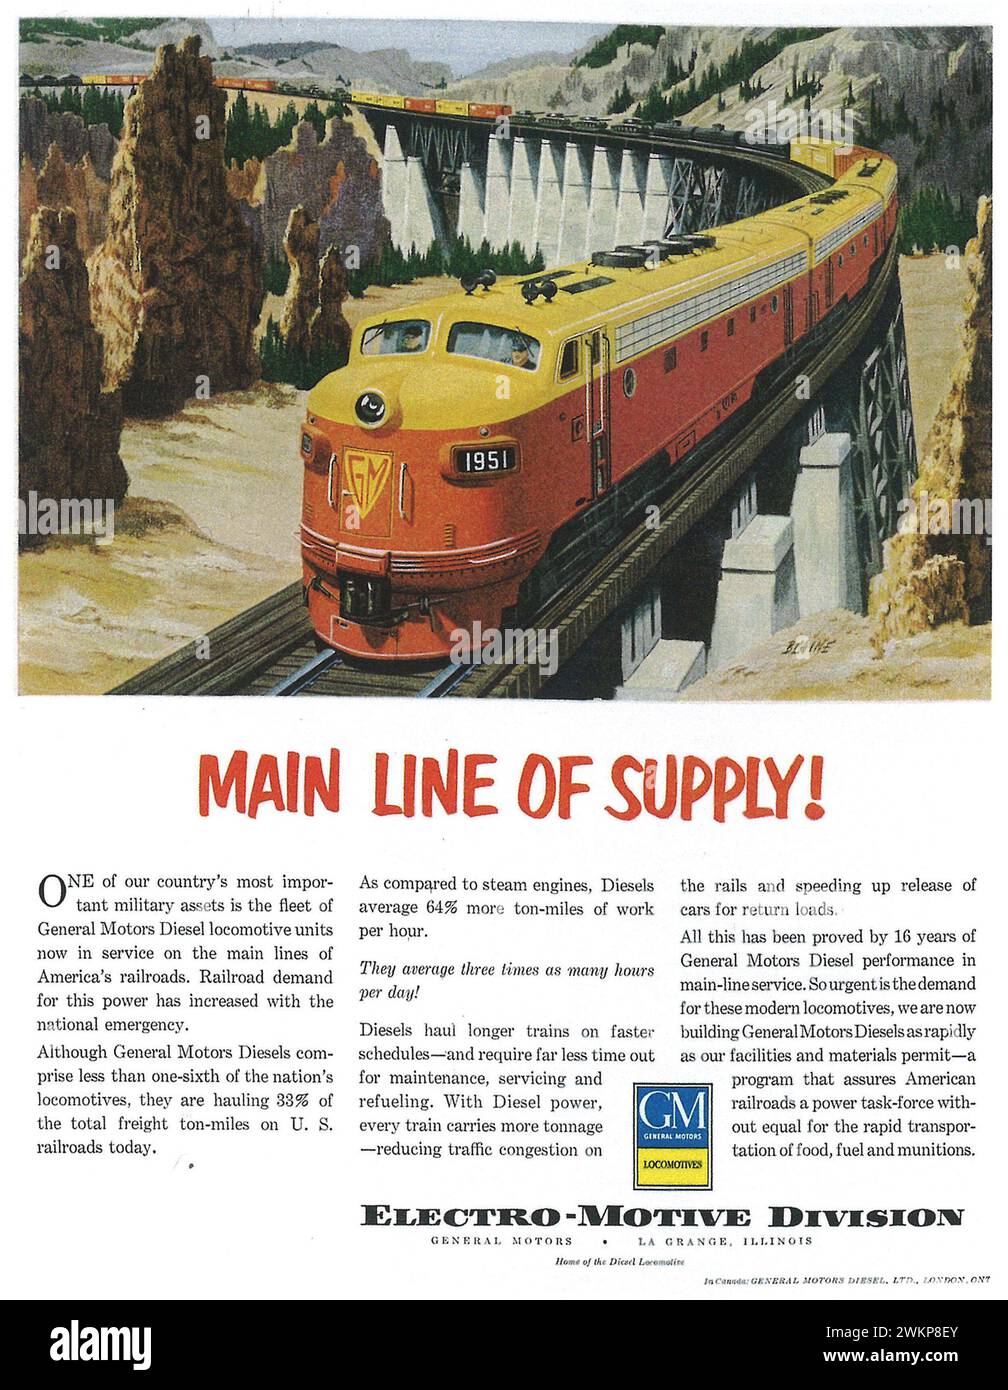 1961 publicité imprimée sur les locomotives General Motors. Ligne principale d'approvisionnement locomotive électro-motive Banque D'Images